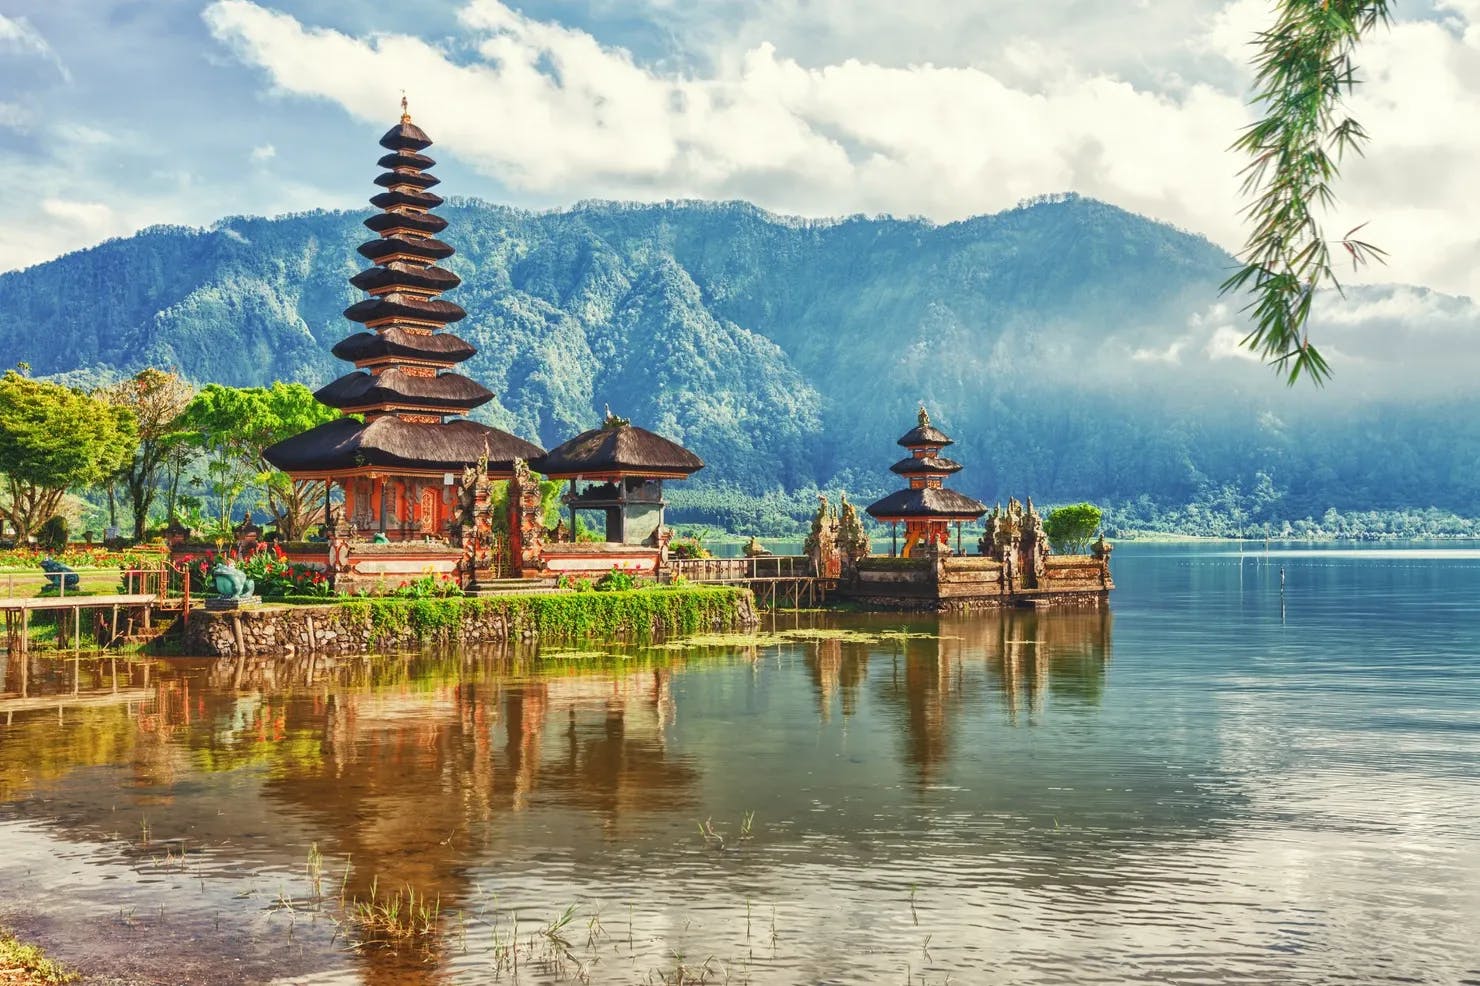 Pura Ulun Danu temple on a lake Beratan in Bali, Indonesia